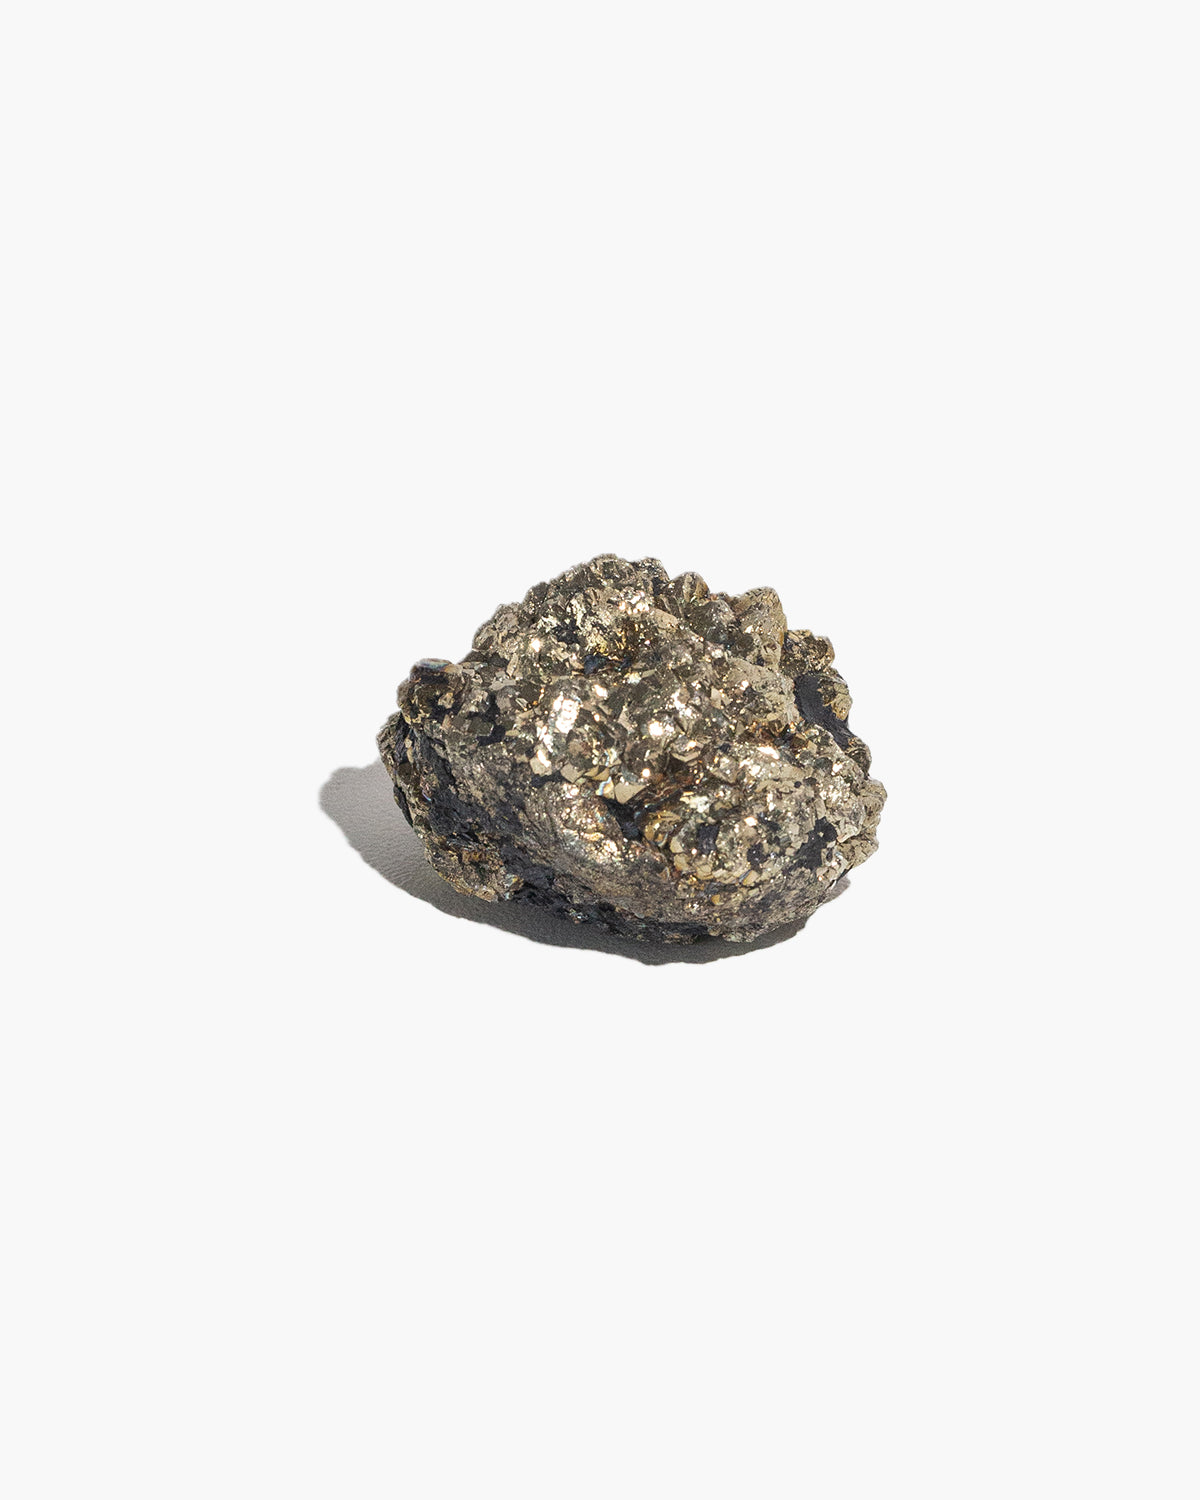 Super Nova Pyrite (Marcasite with Graphite) Cluster – N°04